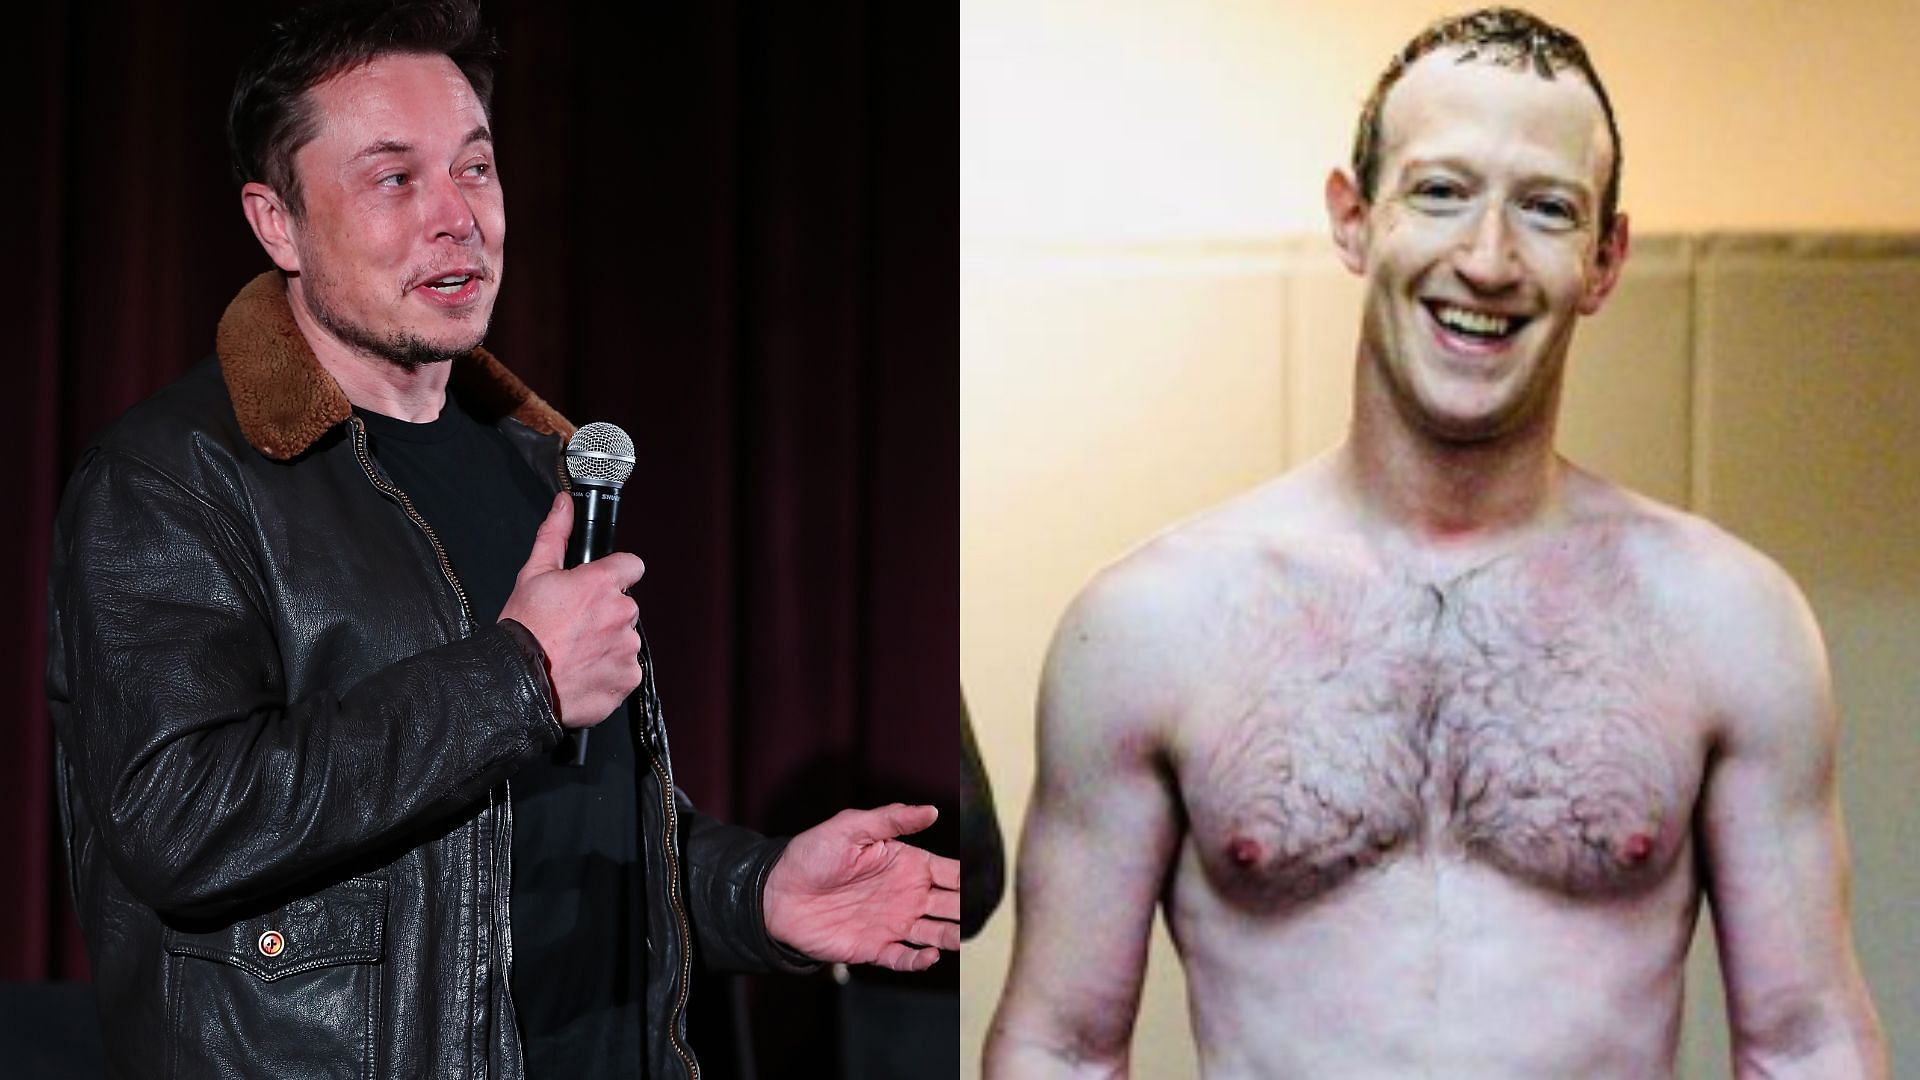 Elon Musk (left), Mark Zuckerberg (right)